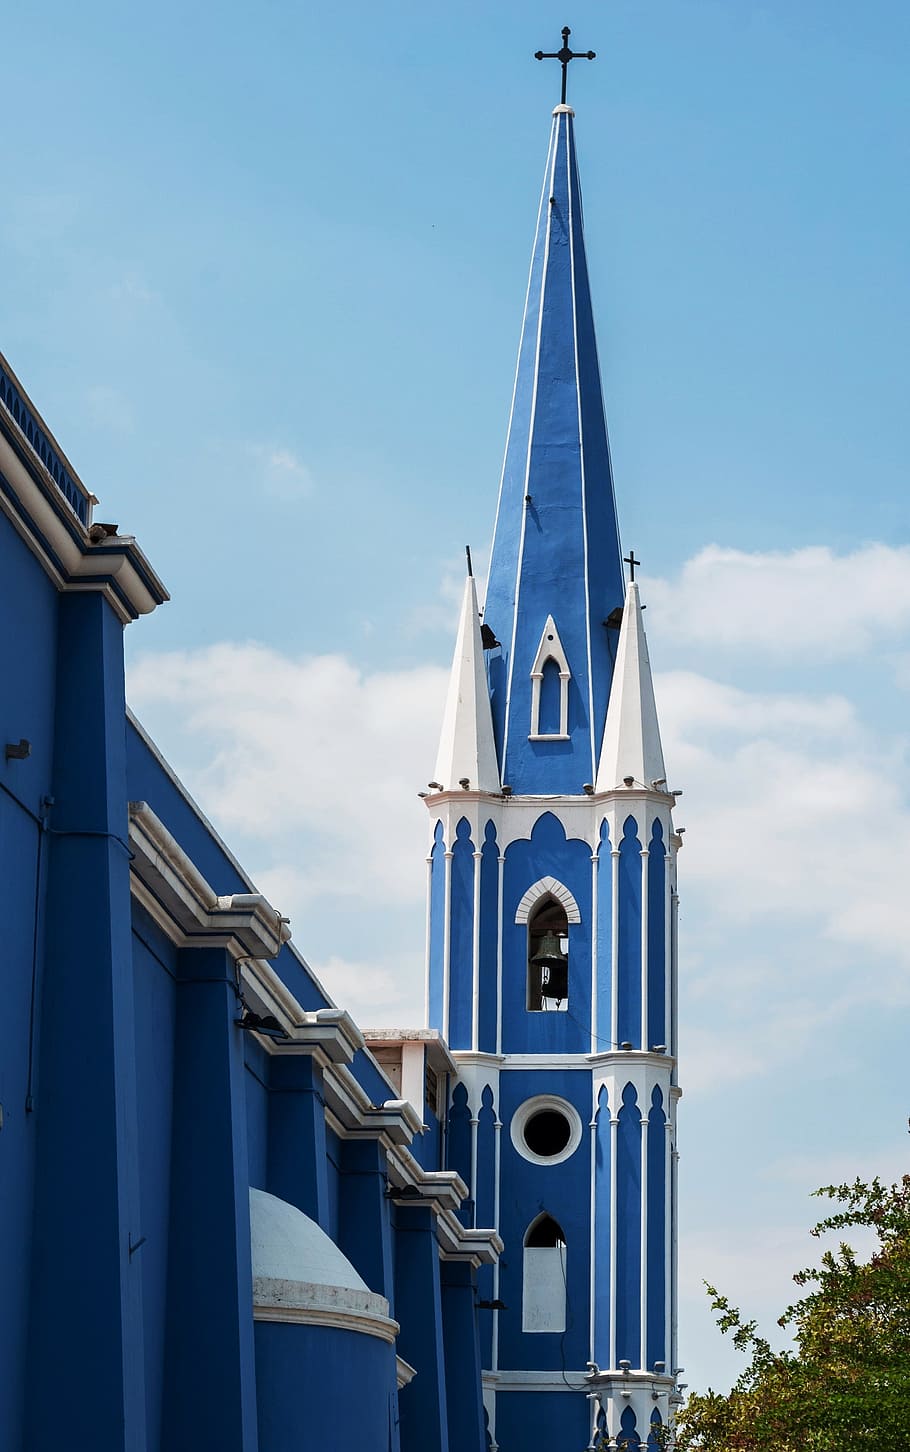 マラカイボ, ベネズエラ, 教会, 建物, 尖塔, タワー, 空, 雲, 青, 建築